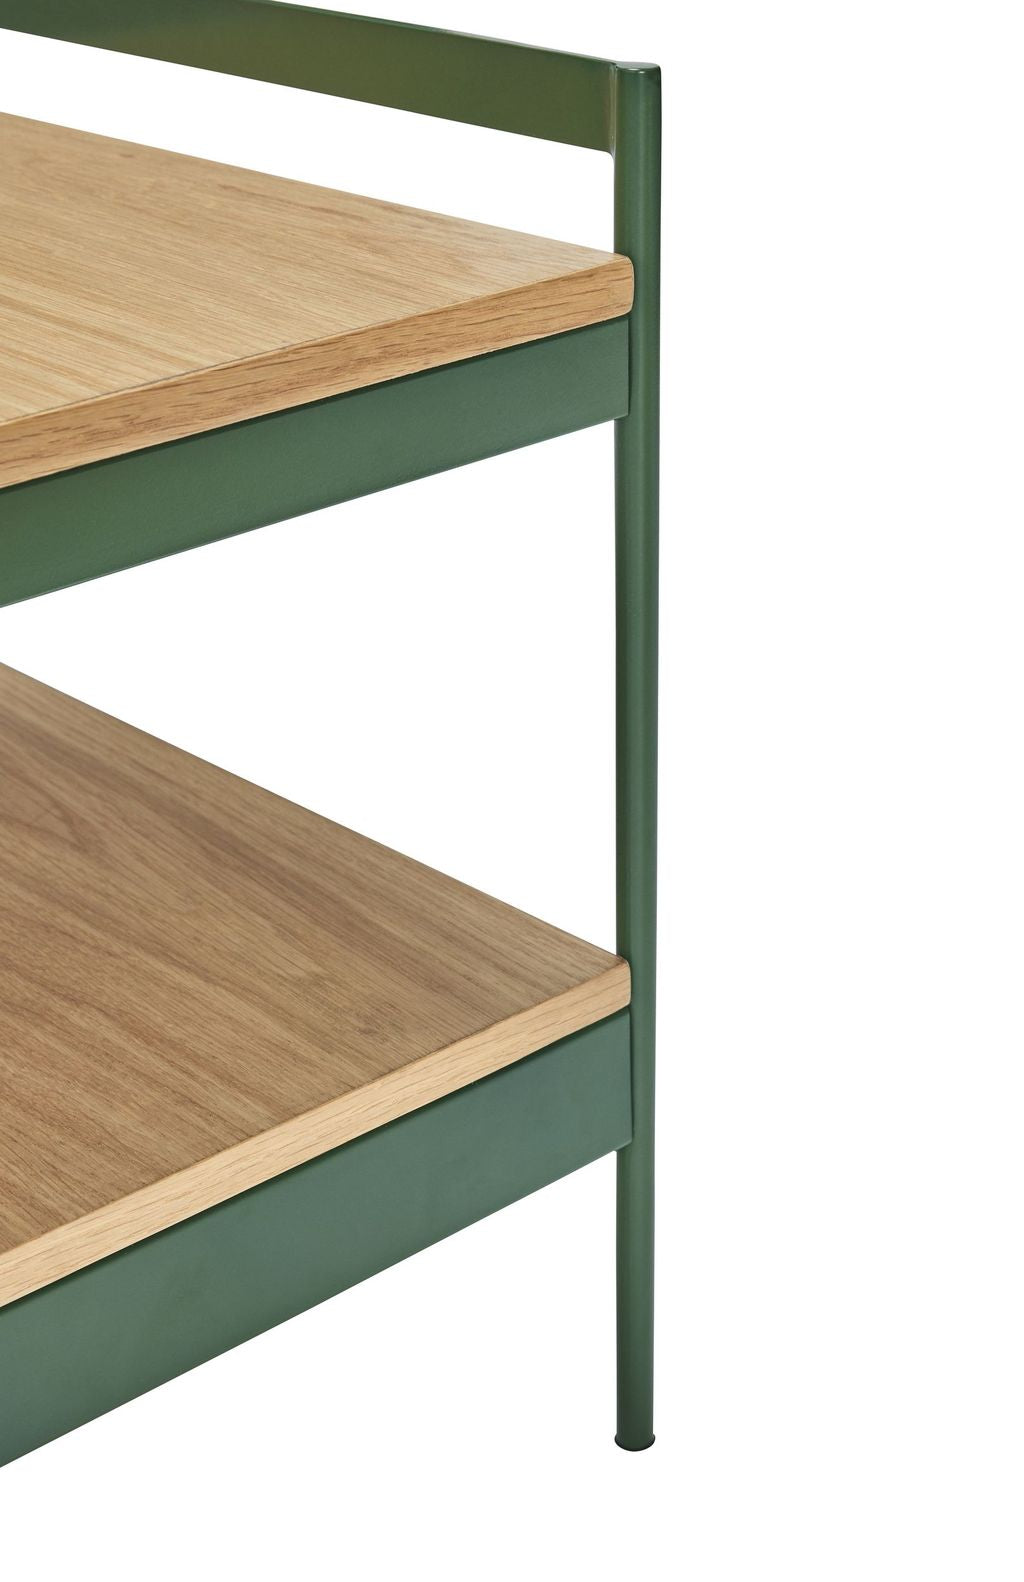 Hübsch Jaunty Side Table, grüne/natürliche Farben